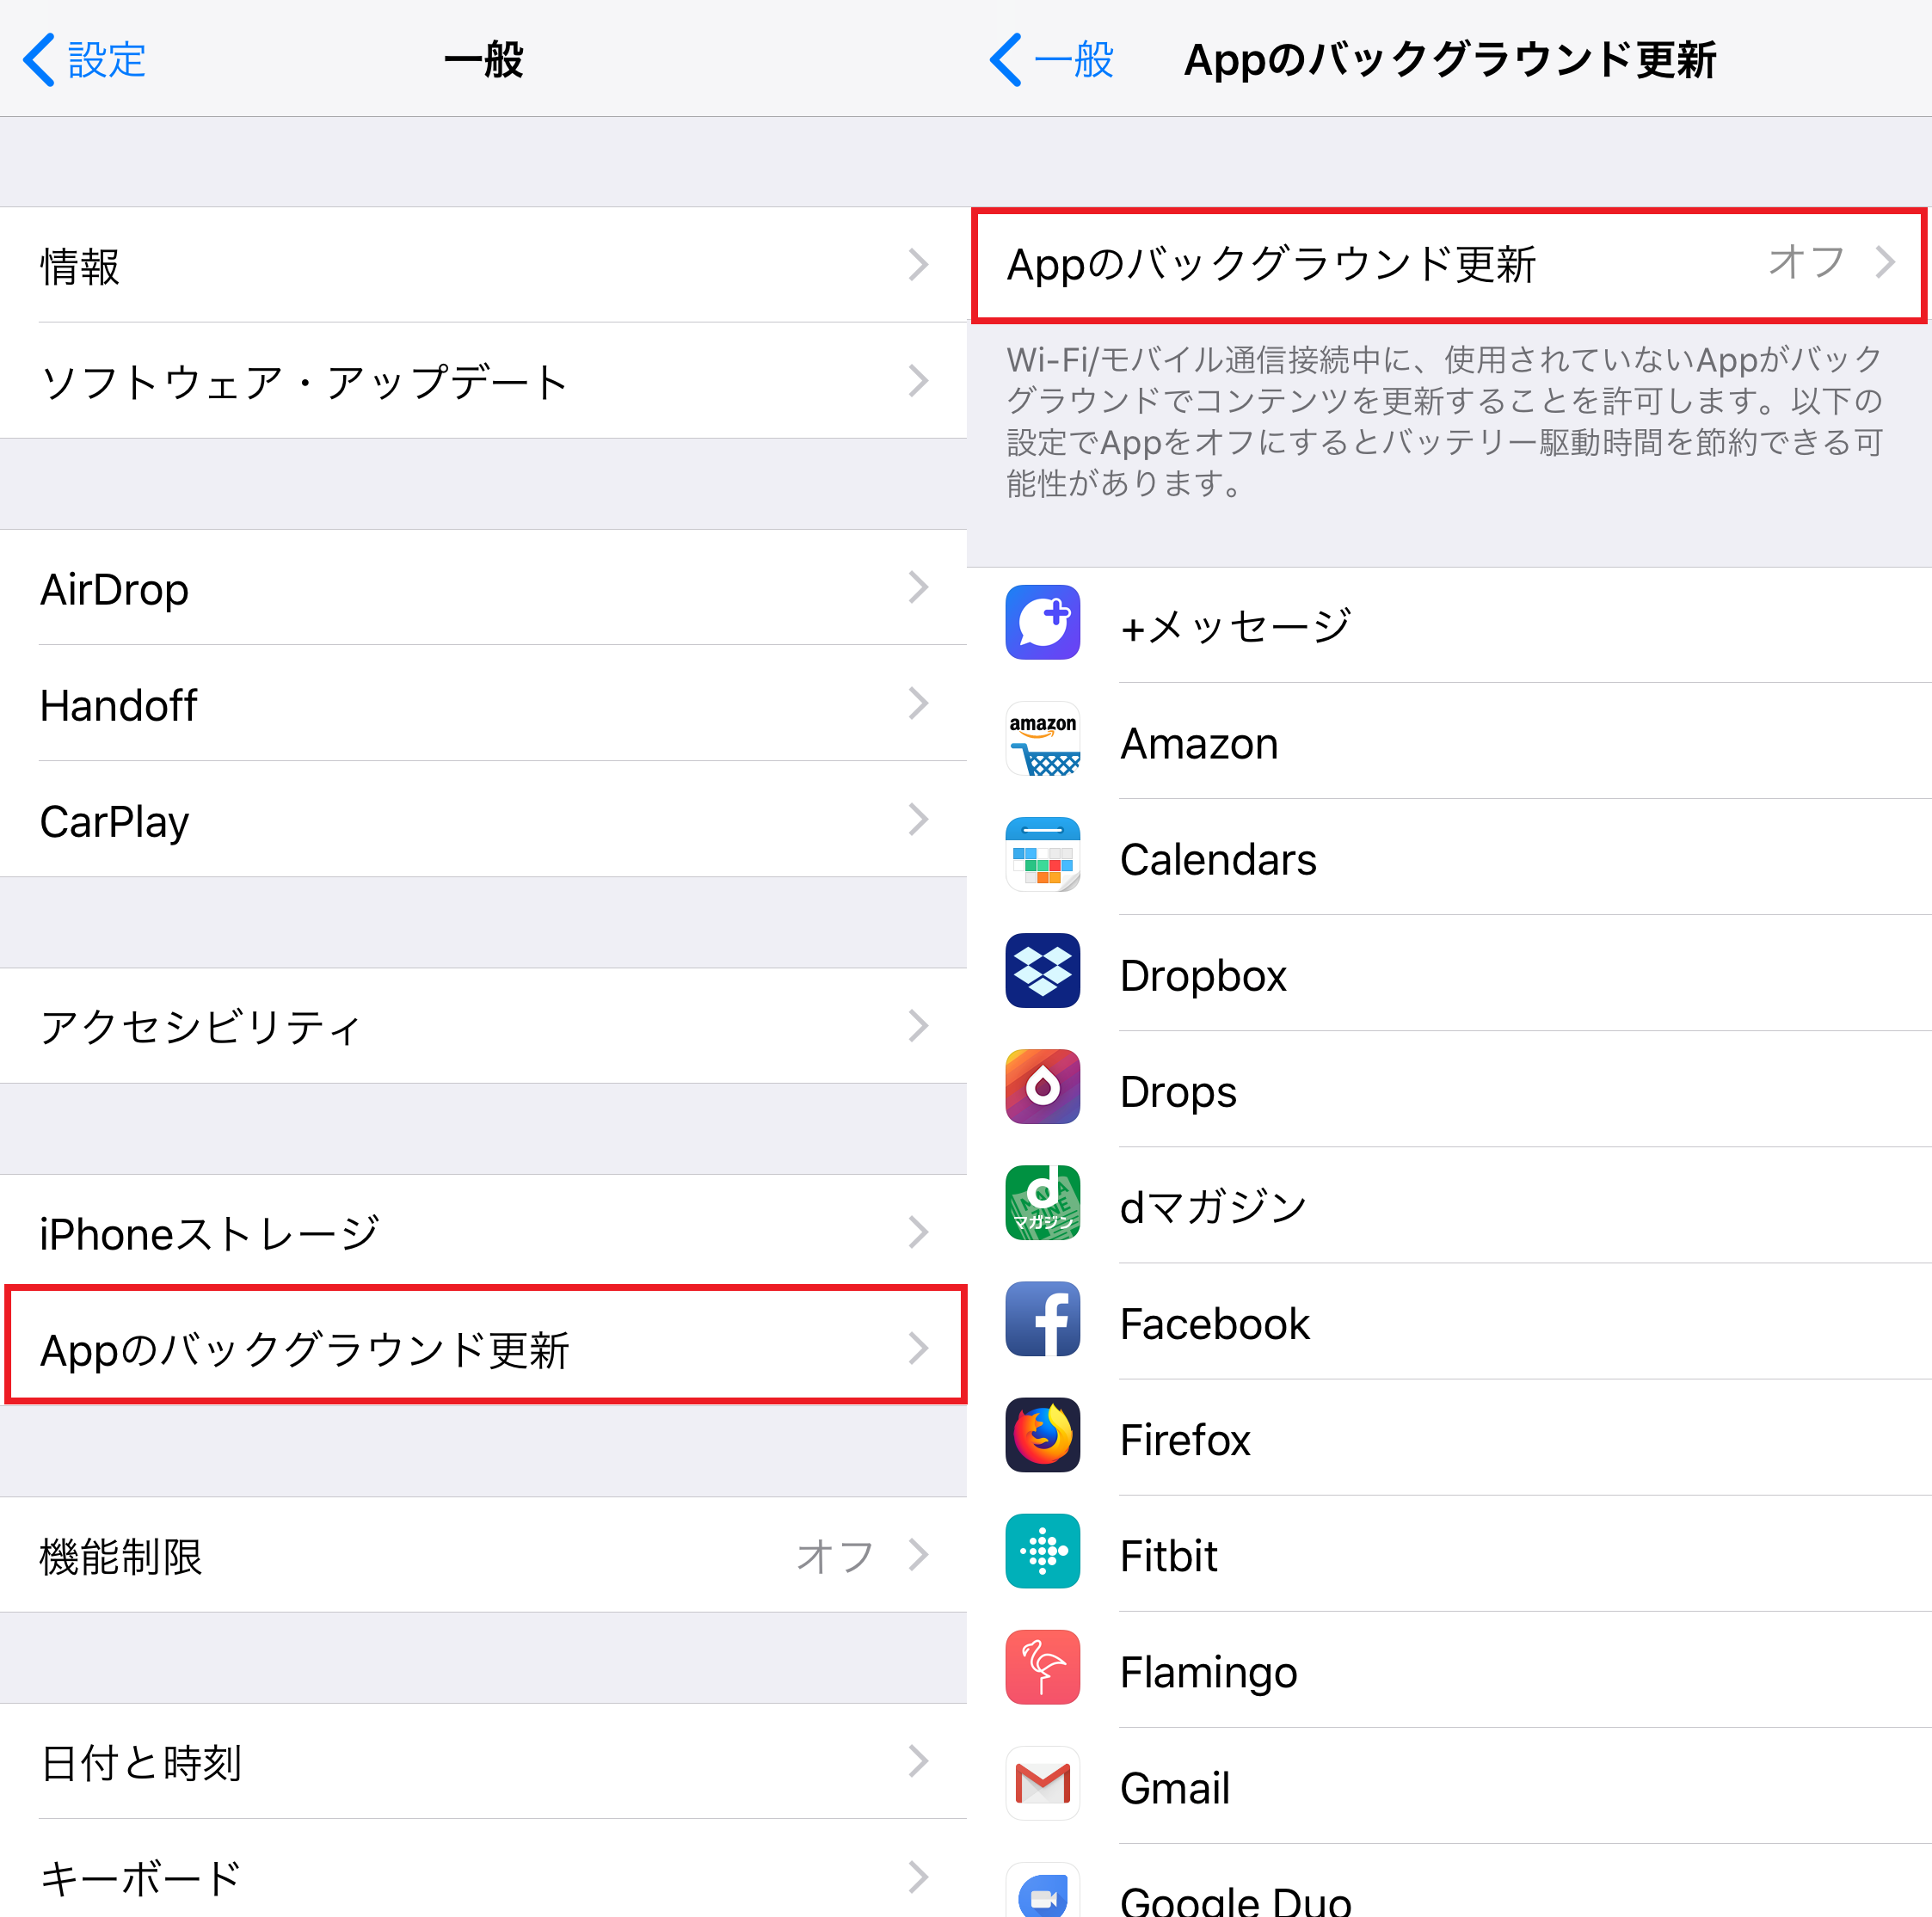 海外旅行で必須 Iphoneが勝手に通信しないための設定方法 Iphone Tips Engadget 日本版